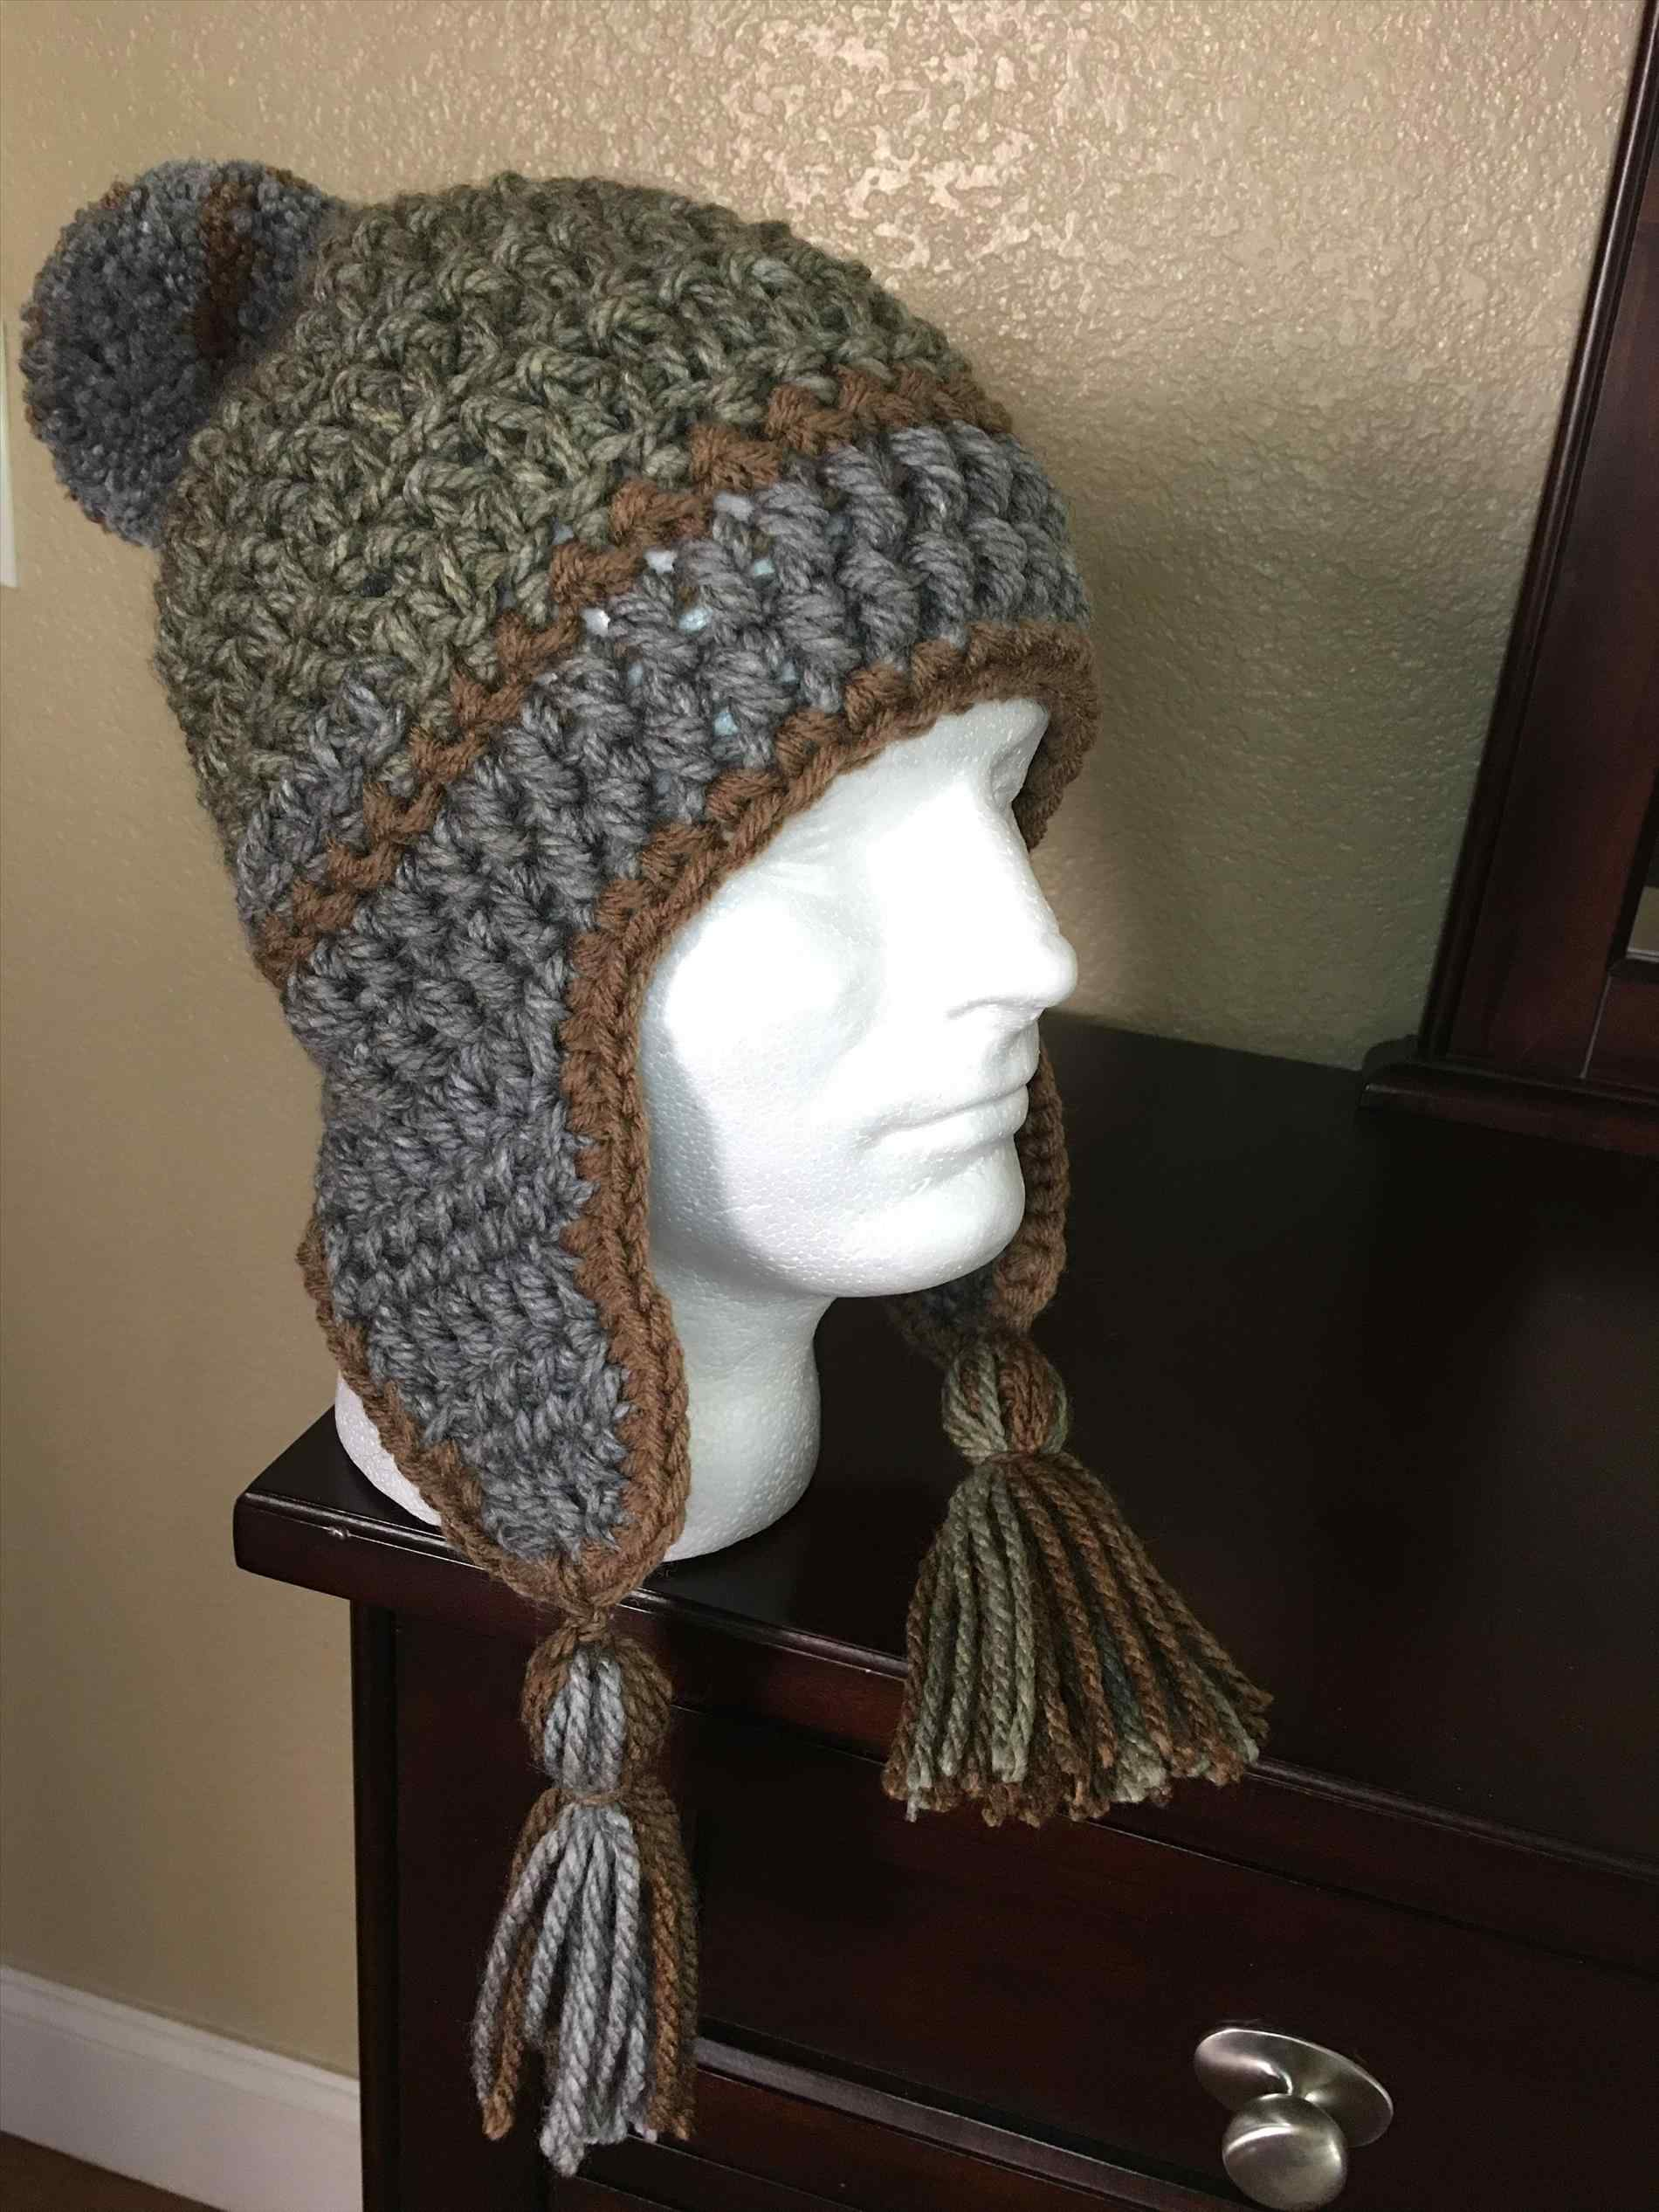 Single Crochet Earflap Hat Pattern Knitrhknittingmatterscom Tutorial How To An Winter Beanie